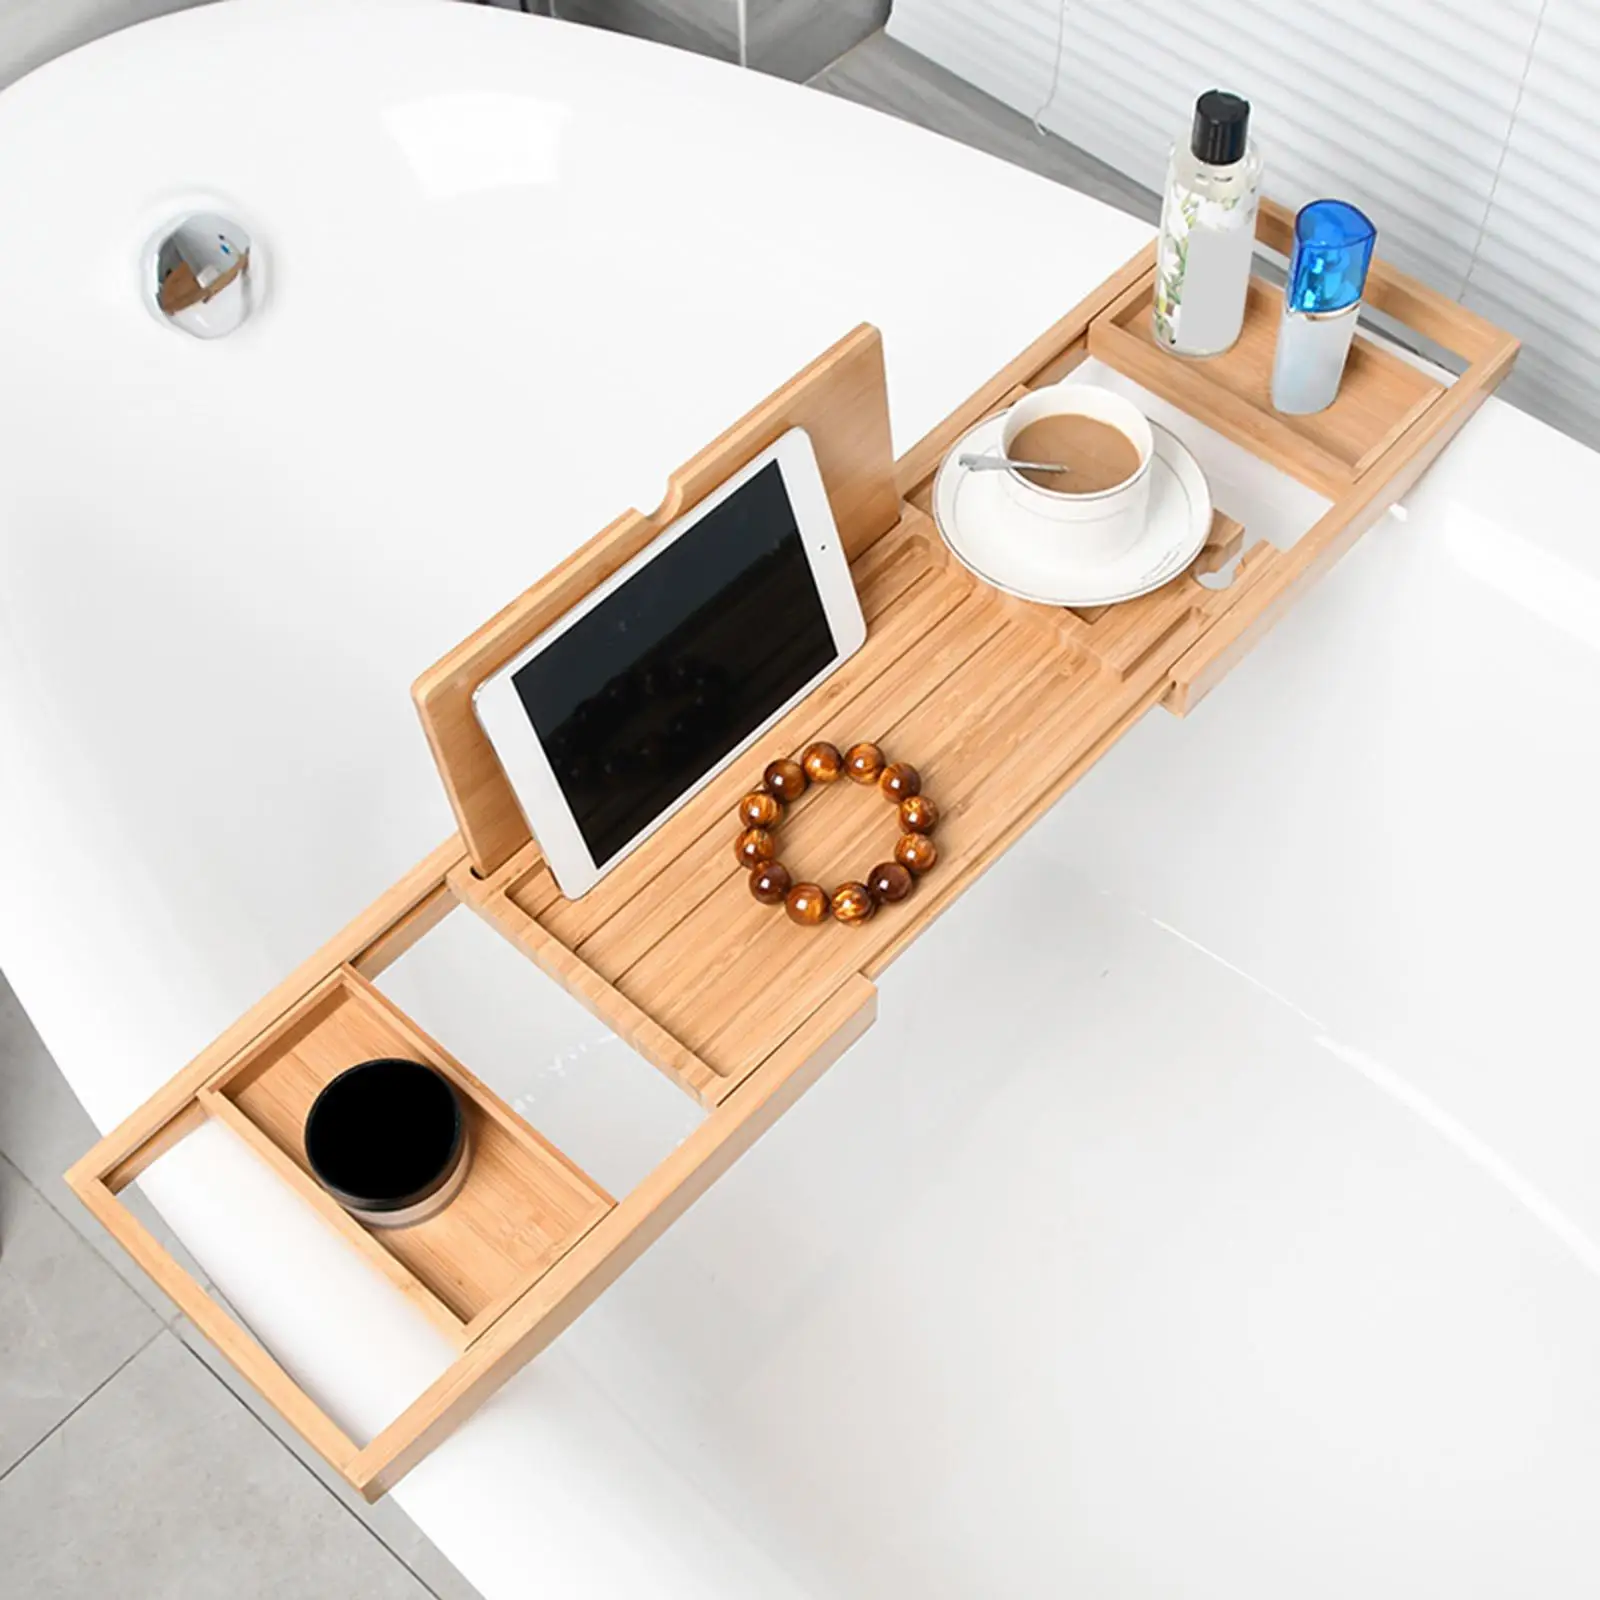 Bathtub Tray Bath Caddy Tray for Tub with Slots Holds Book,Phone ,Soap 23.62``-34.25`` Bath Tray Bathtub Stand Holder